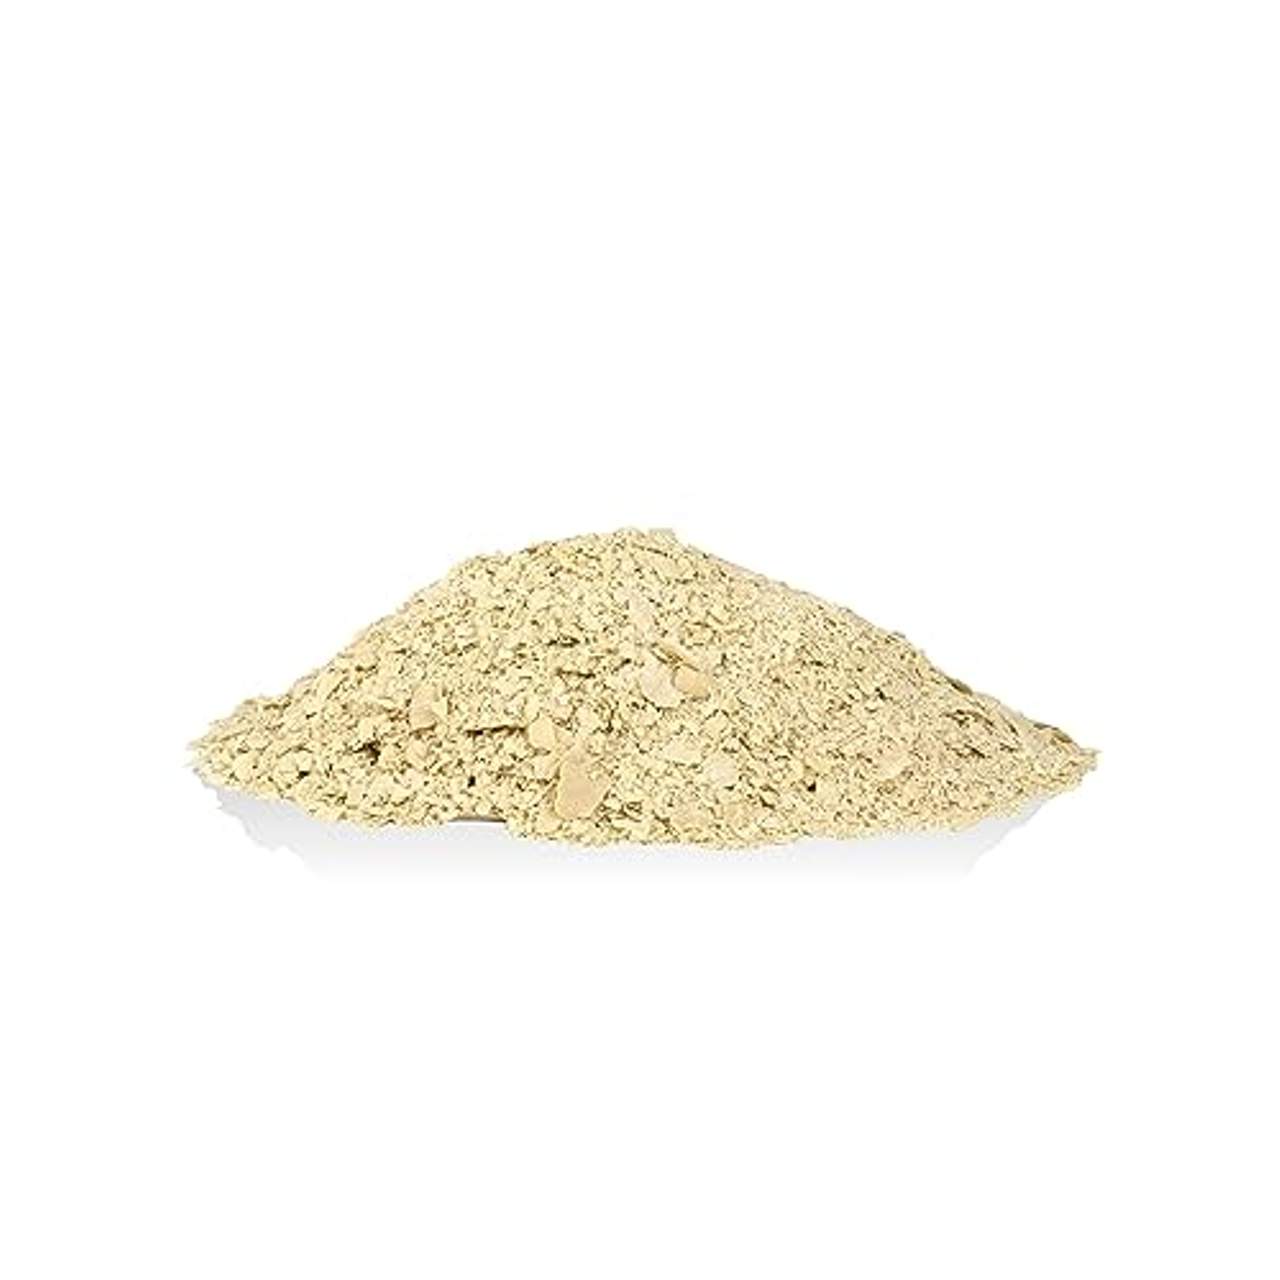 Hefeflocken 1 kg nutritional yeast Melasse edel Hefeflocken